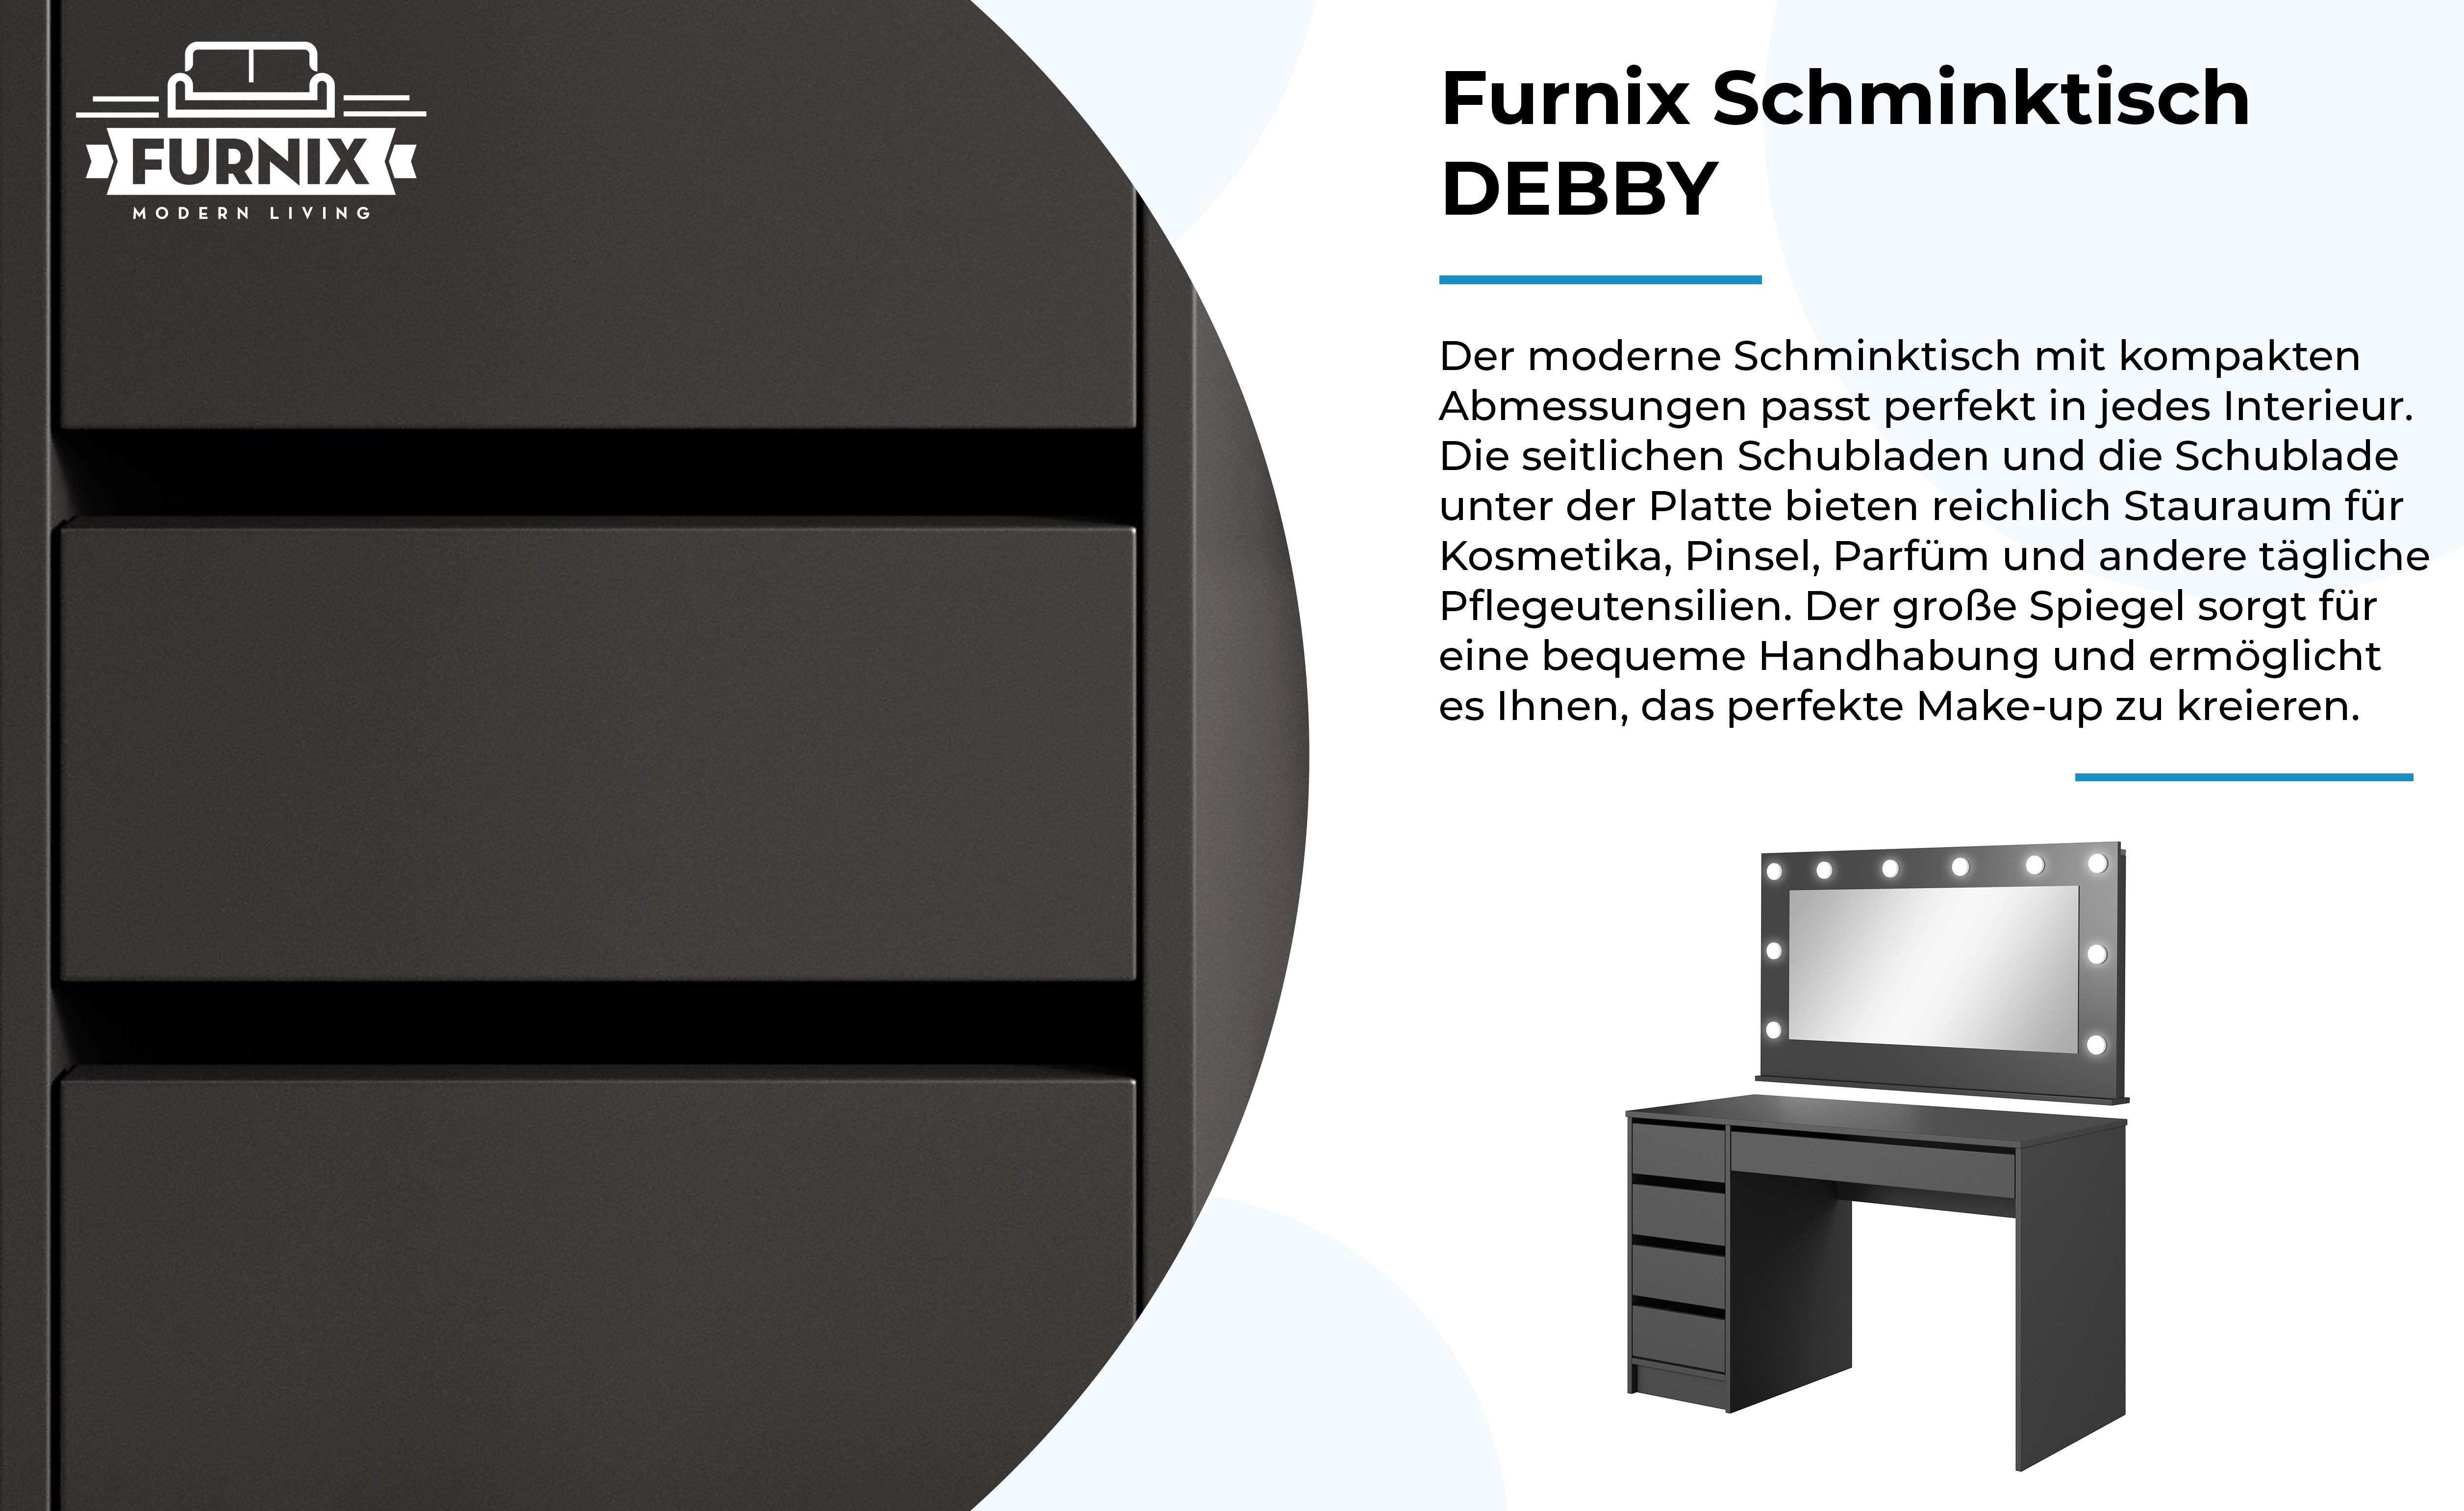 Furnix Schminktisch DEBBY made x Spiegel Anthrazit pflegeleicht, Schublade H75 in T55 ohne Ablagen geräumig, x cm, EU B120 LED-Beleuchtung